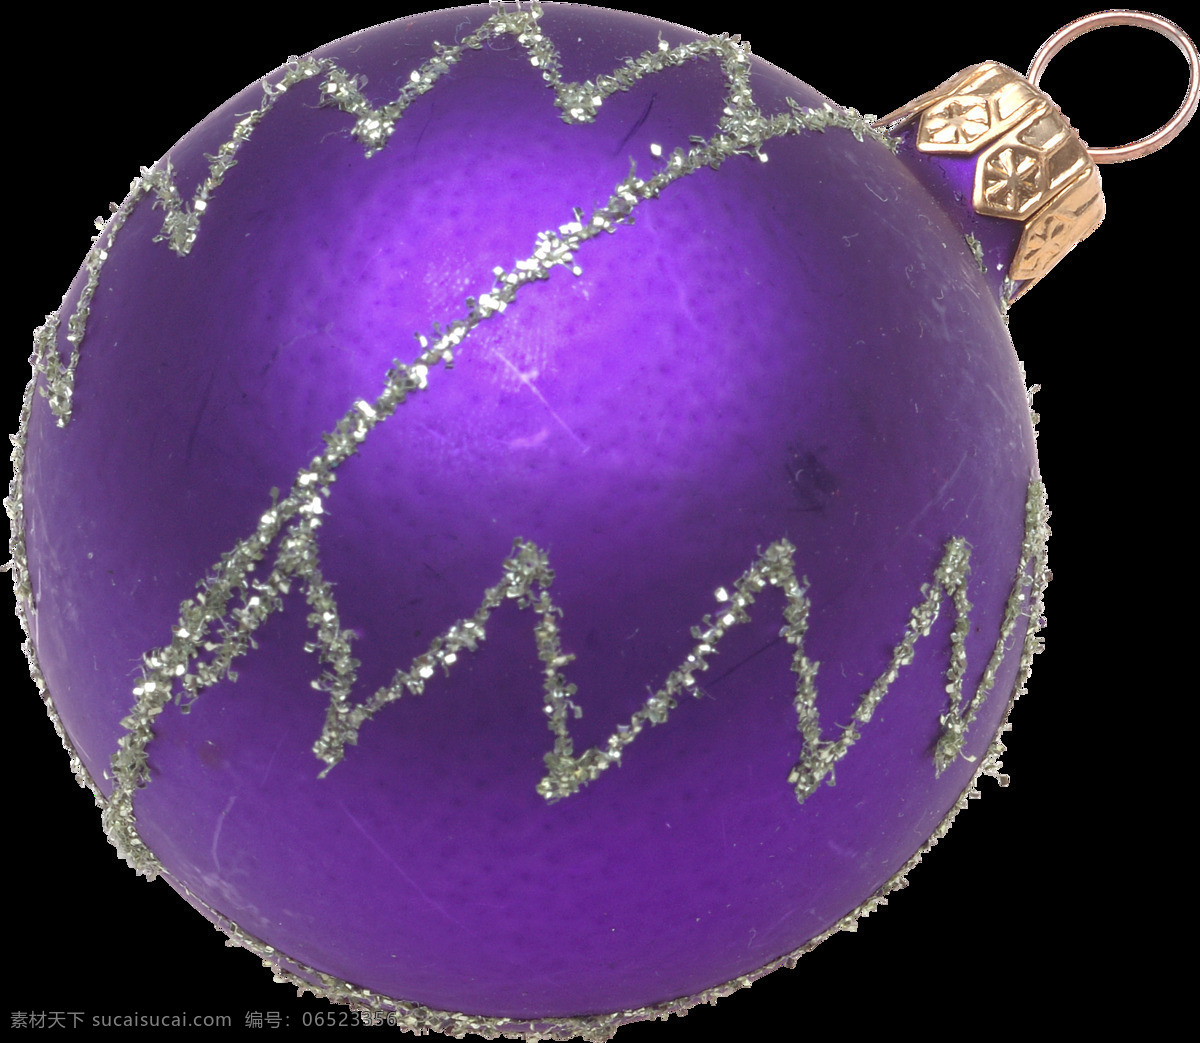 紫色 圣诞 装饰 球 2018 圣诞节 节日素材 圣诞素材 圣诞元素 圣诞装饰球